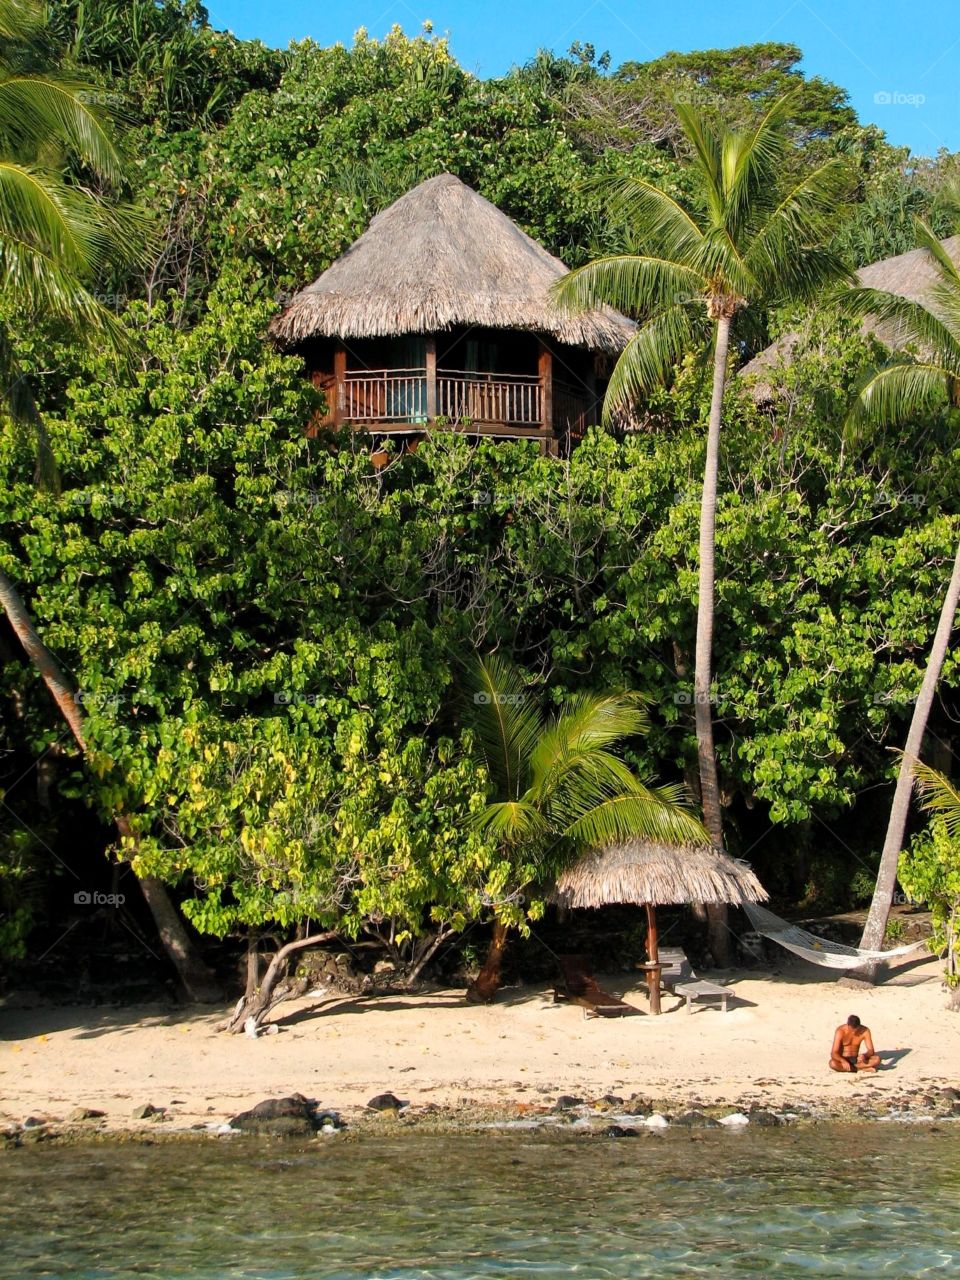 Tree hut in Bora Bora. A tree hut at the Sofitel Private Island in Bora Bora, French Polynedia